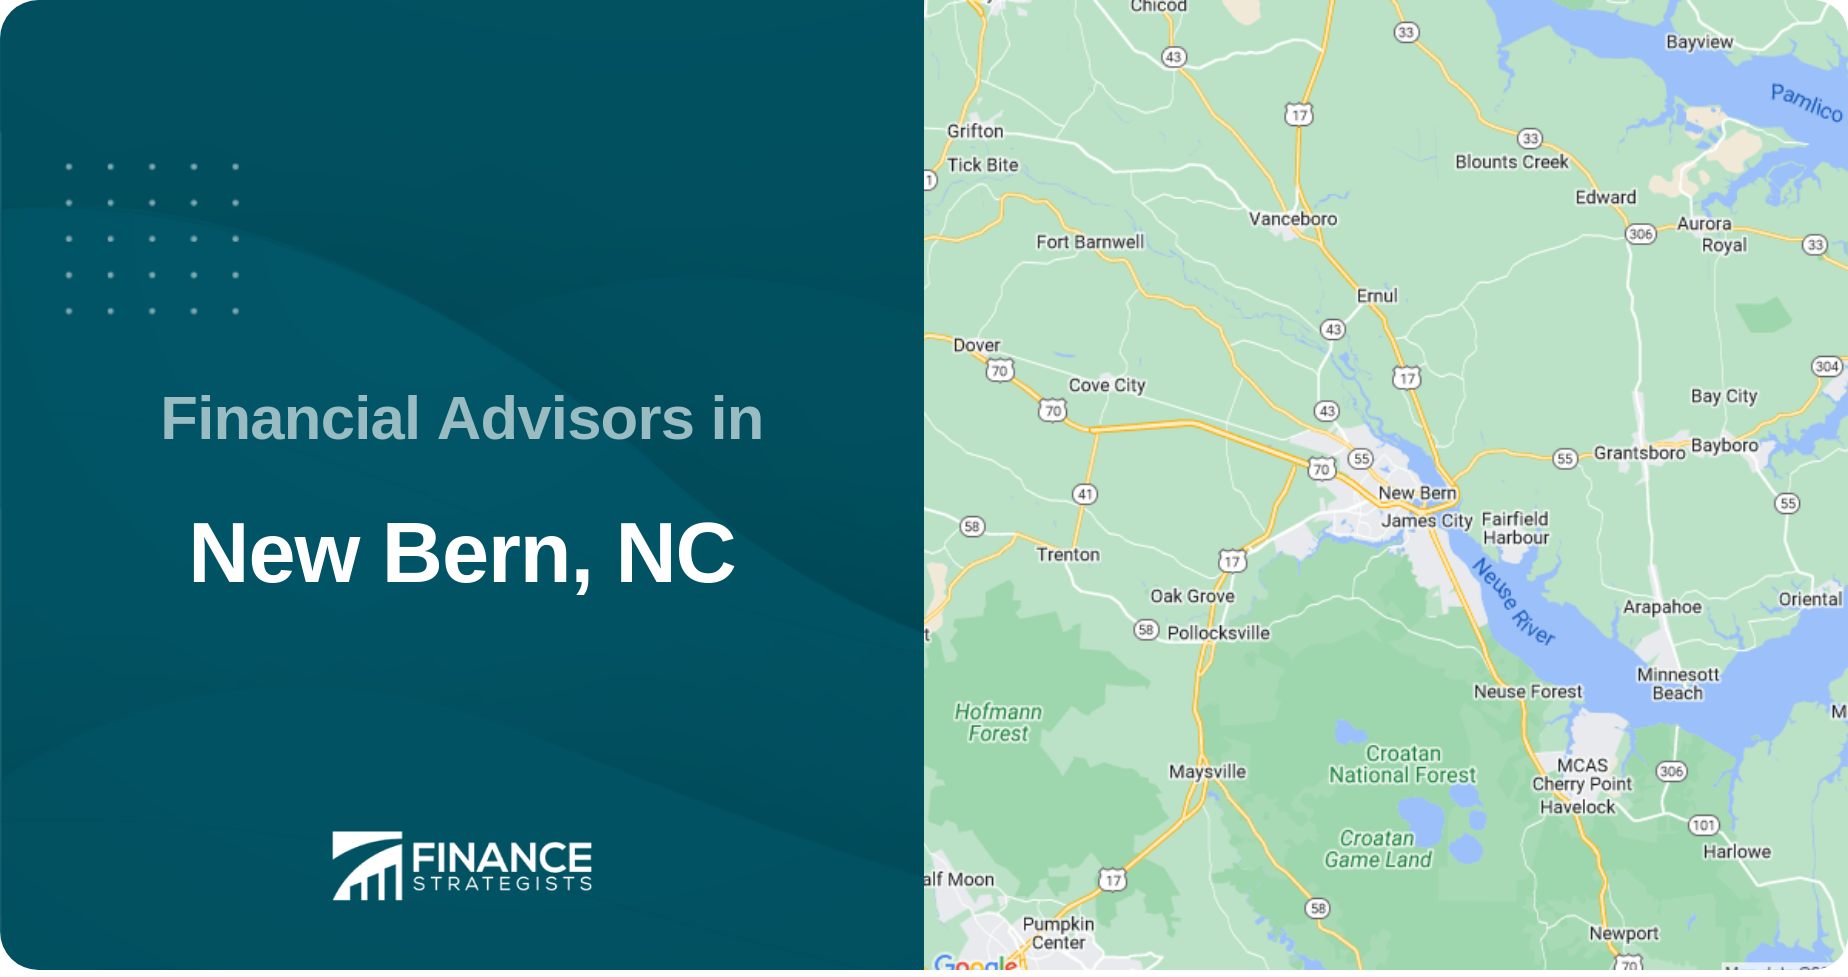 Financial Advisors in New Bern, NC